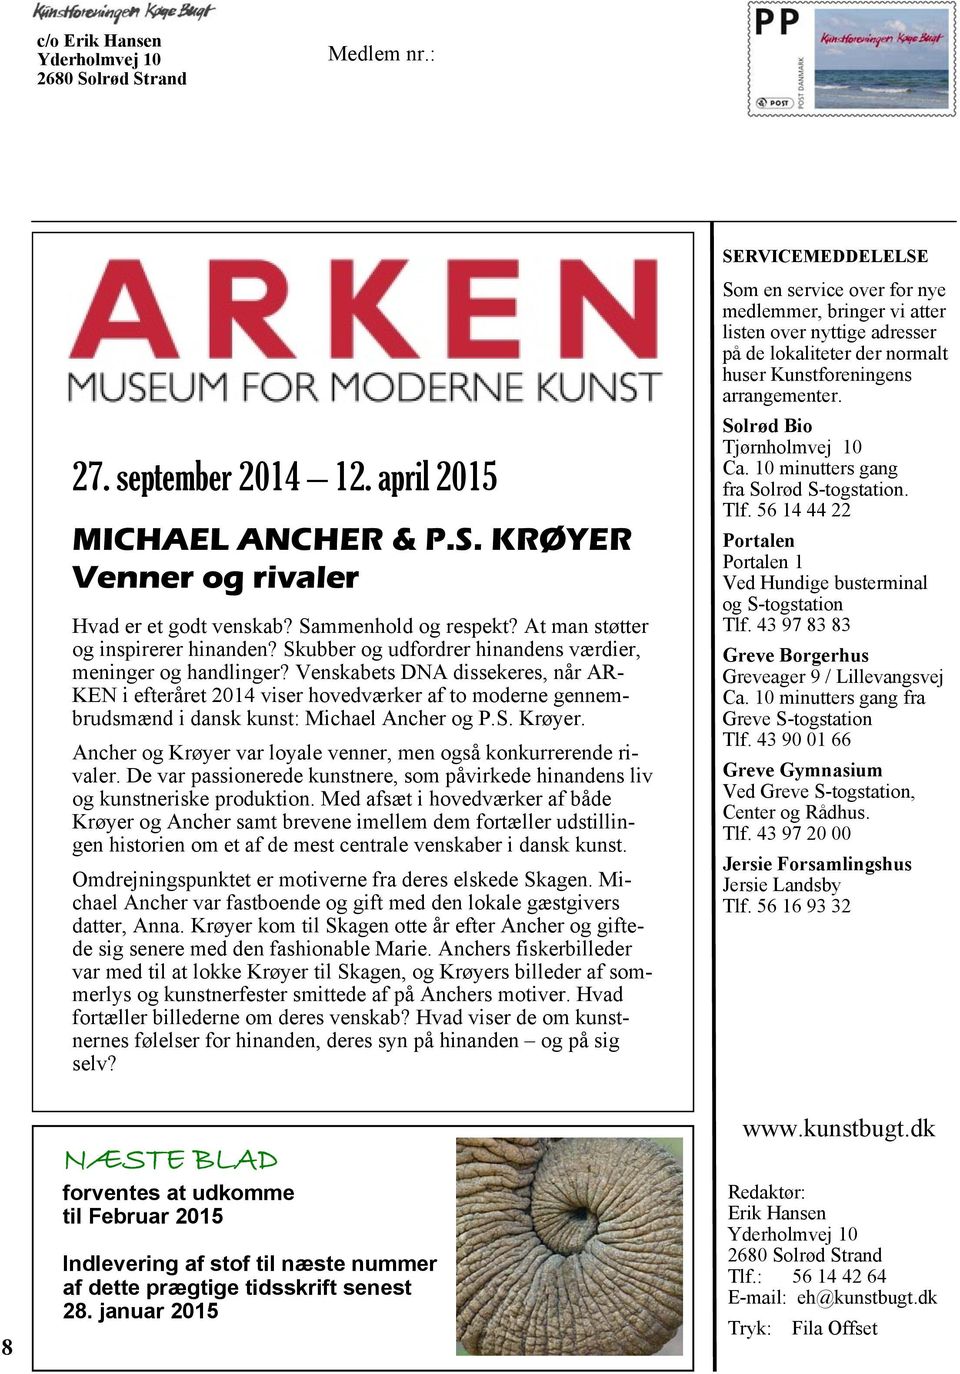 Venskabets DNA dissekeres, når AR- KEN i efteråret 2014 viser hovedværker af to moderne gennembrudsmænd i dansk kunst: Michael Ancher og P.S. Krøyer.